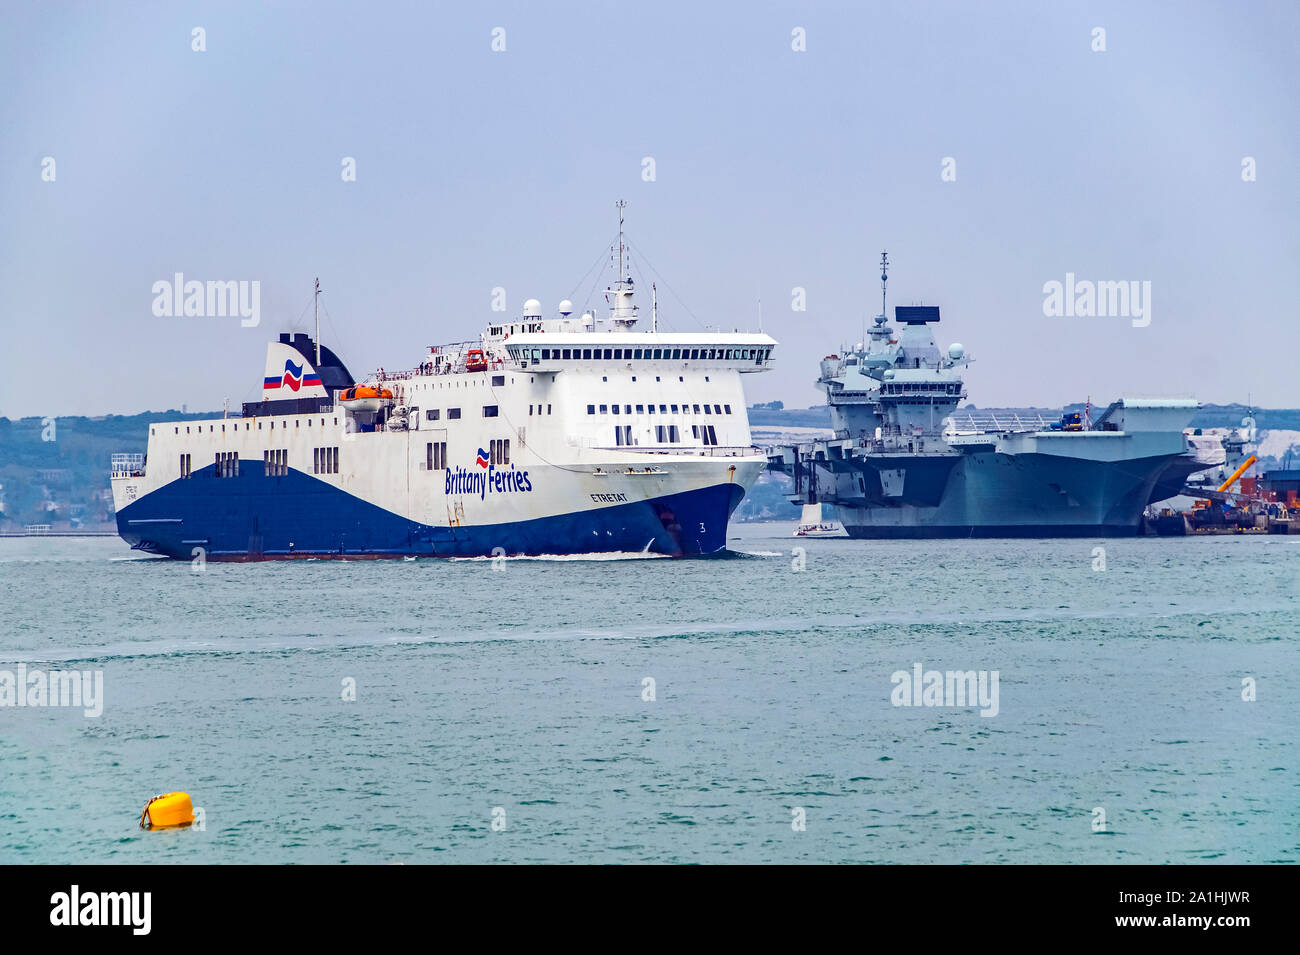 Bretagne Fähren Auto- und Passagierfähre Etretat verlassen Hafen Portsmouth Hampshire England Großbritannien Stockfoto